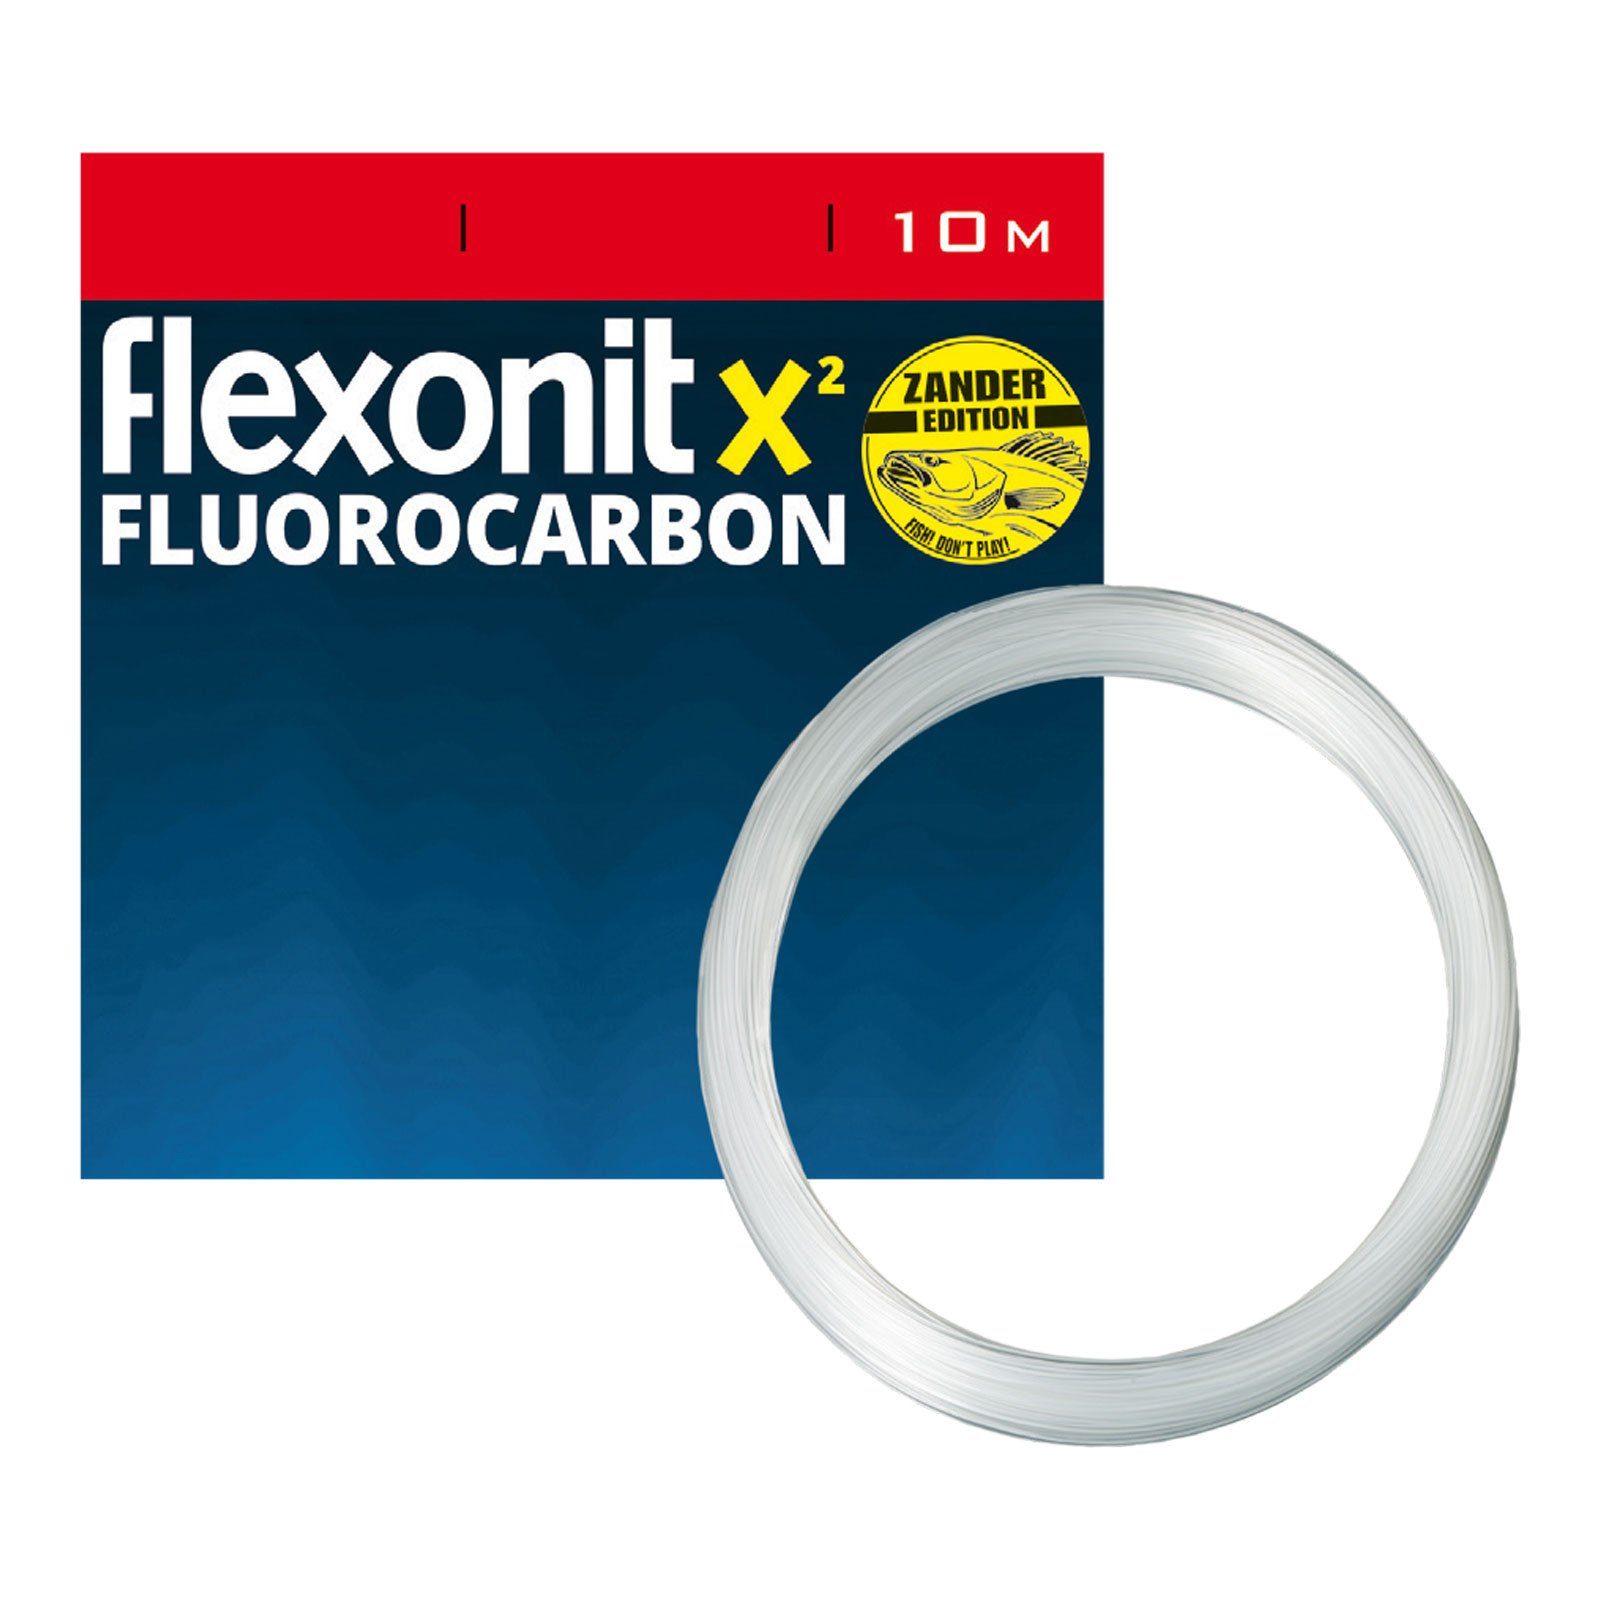 Vorfachschnur, flexonit flexonit Zander 10m Vorfachmaterial 10 9,8kg Länge, Fluoro X² 0,40mm m